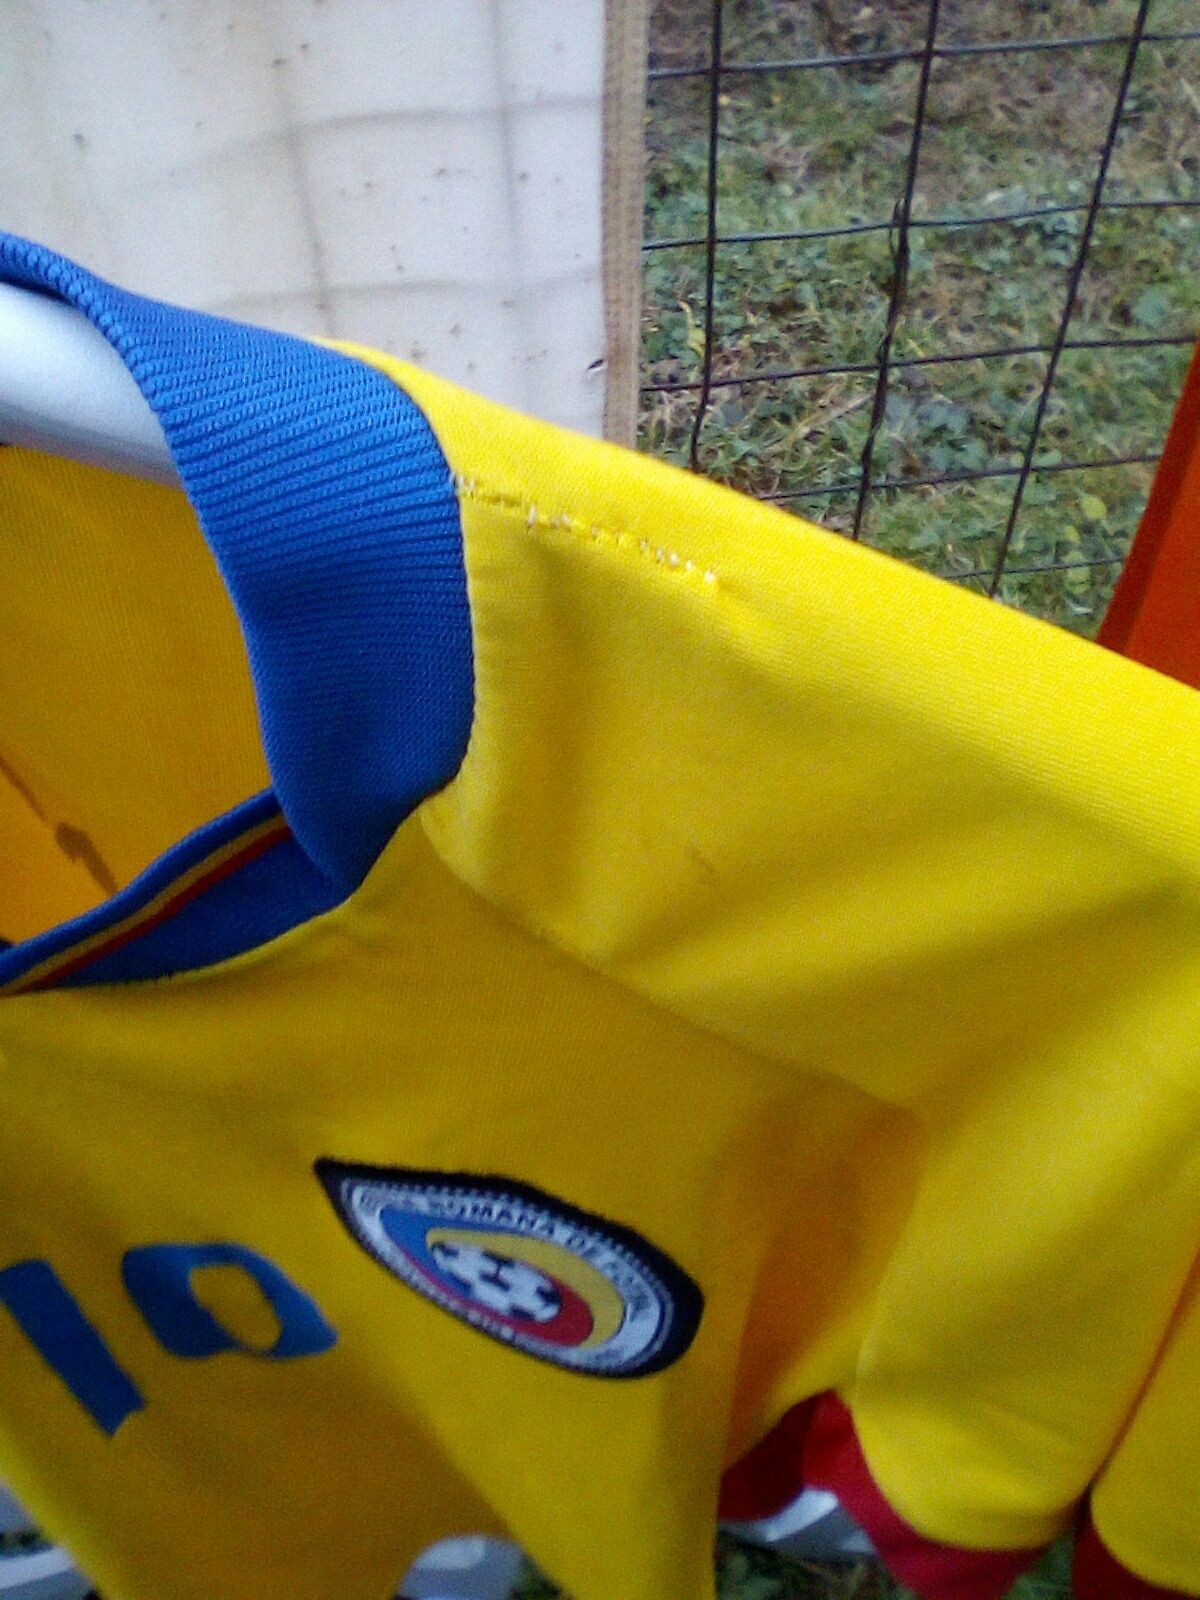 Tricou fotbal,Stanciu/10,nationala Romania/copii,164 cm/adult S